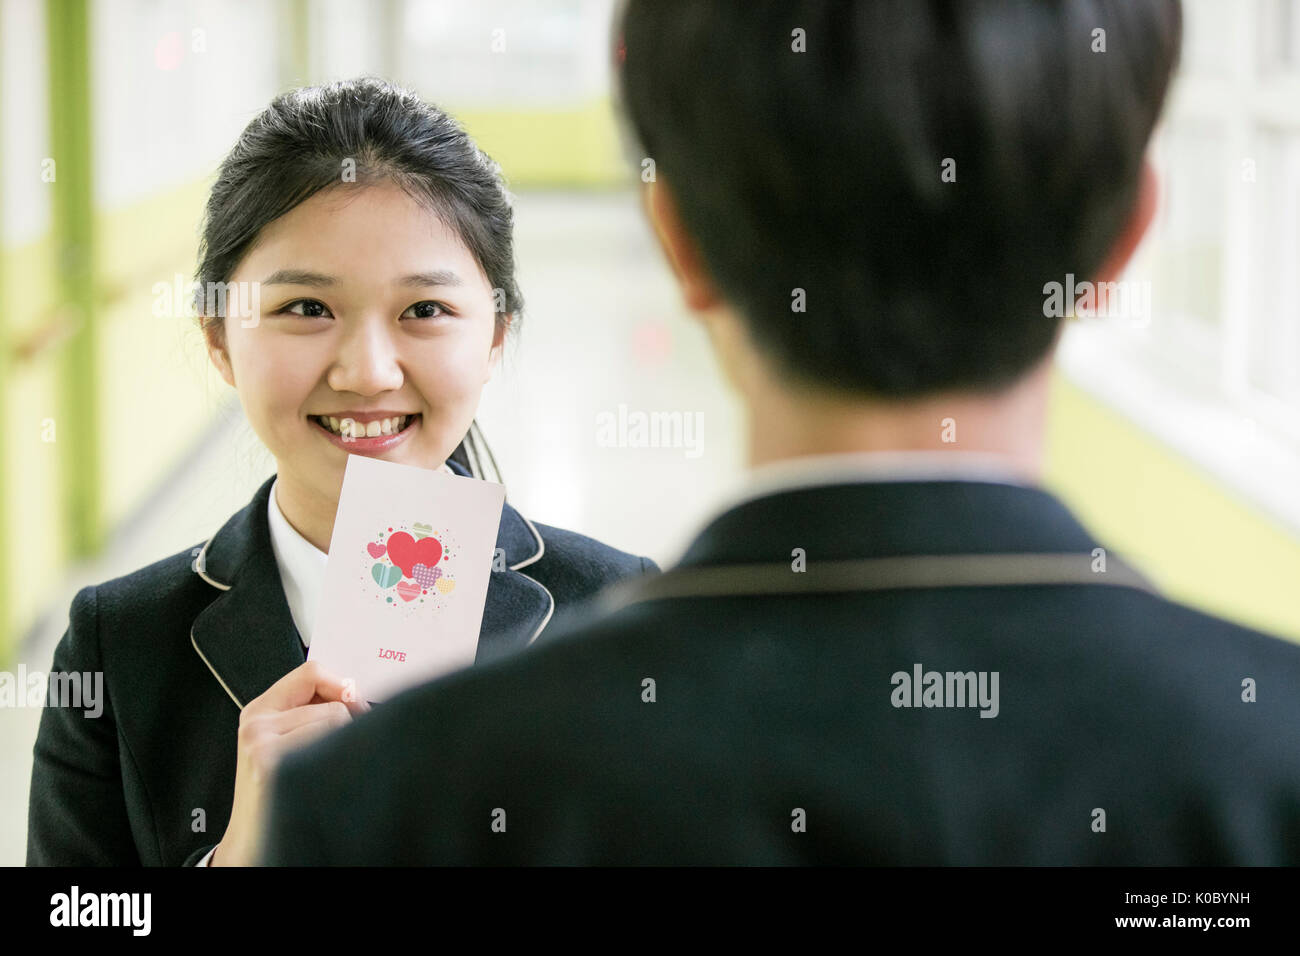 Portrait of smiling fille de l'école montrant une carte pour un garçon de l'école Banque D'Images